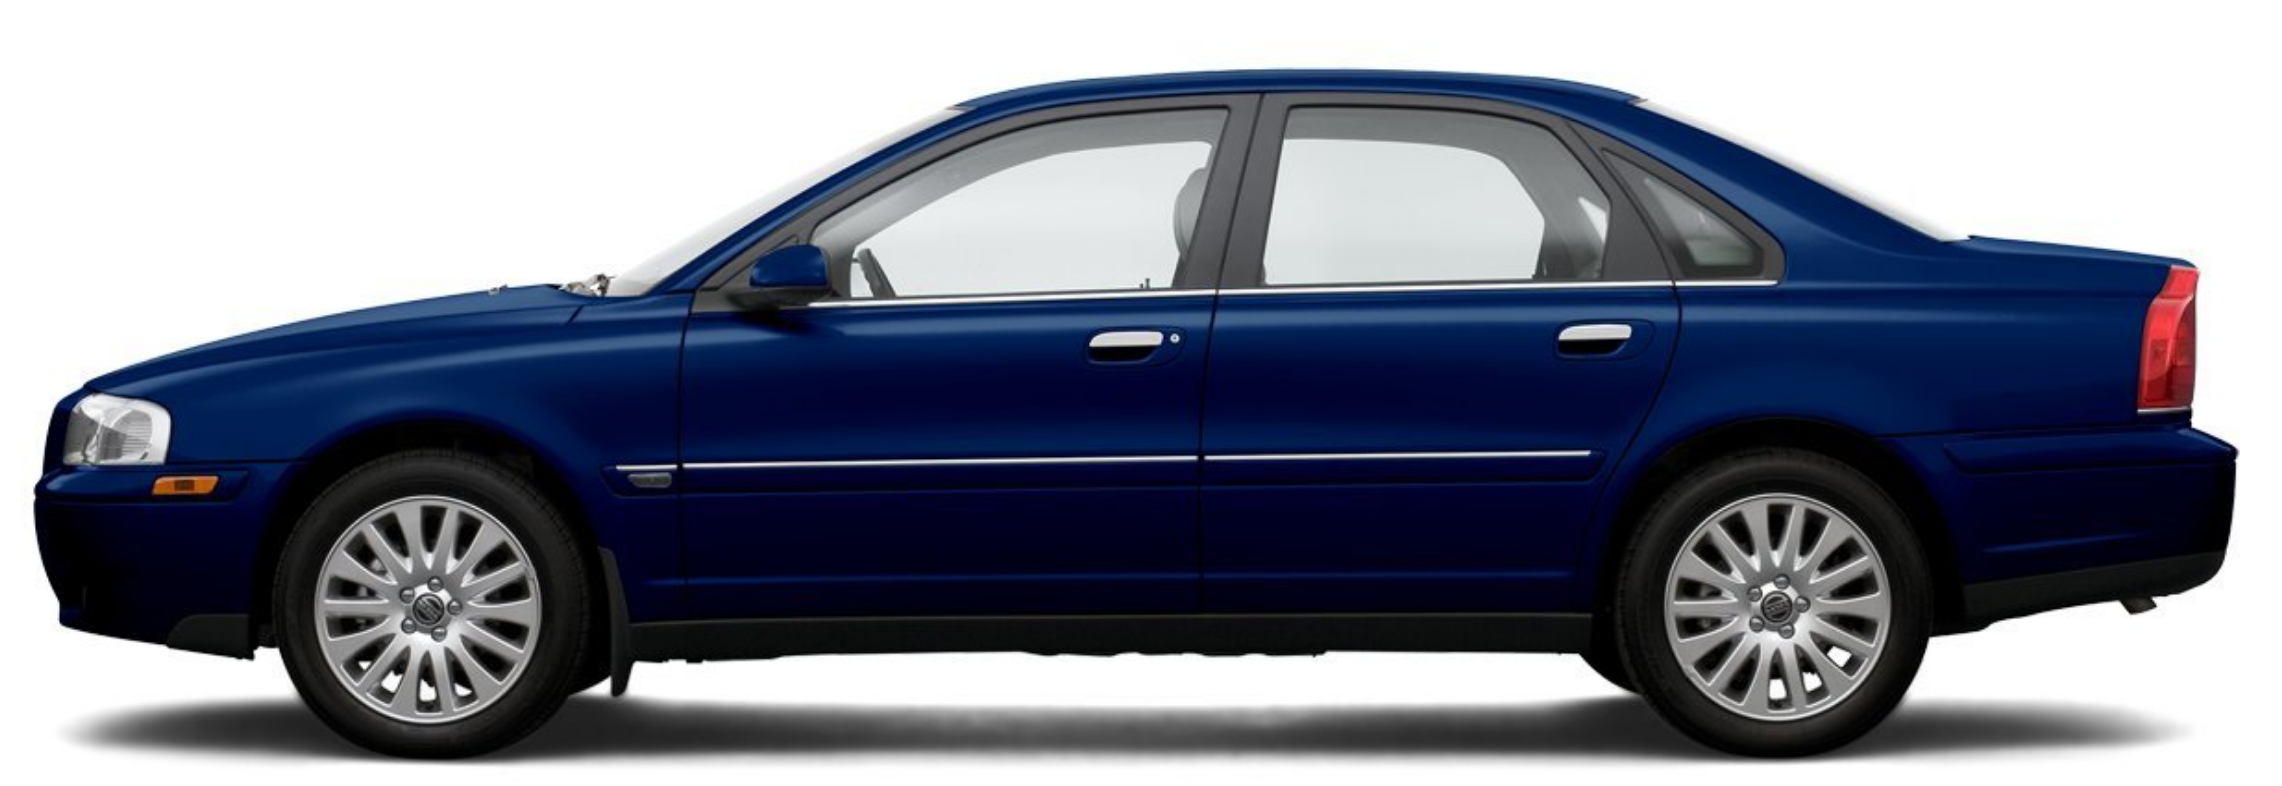 Afbeelding van 55DSVS, blauwe Volvo S80 2.4 170 Pk Aut. sedan